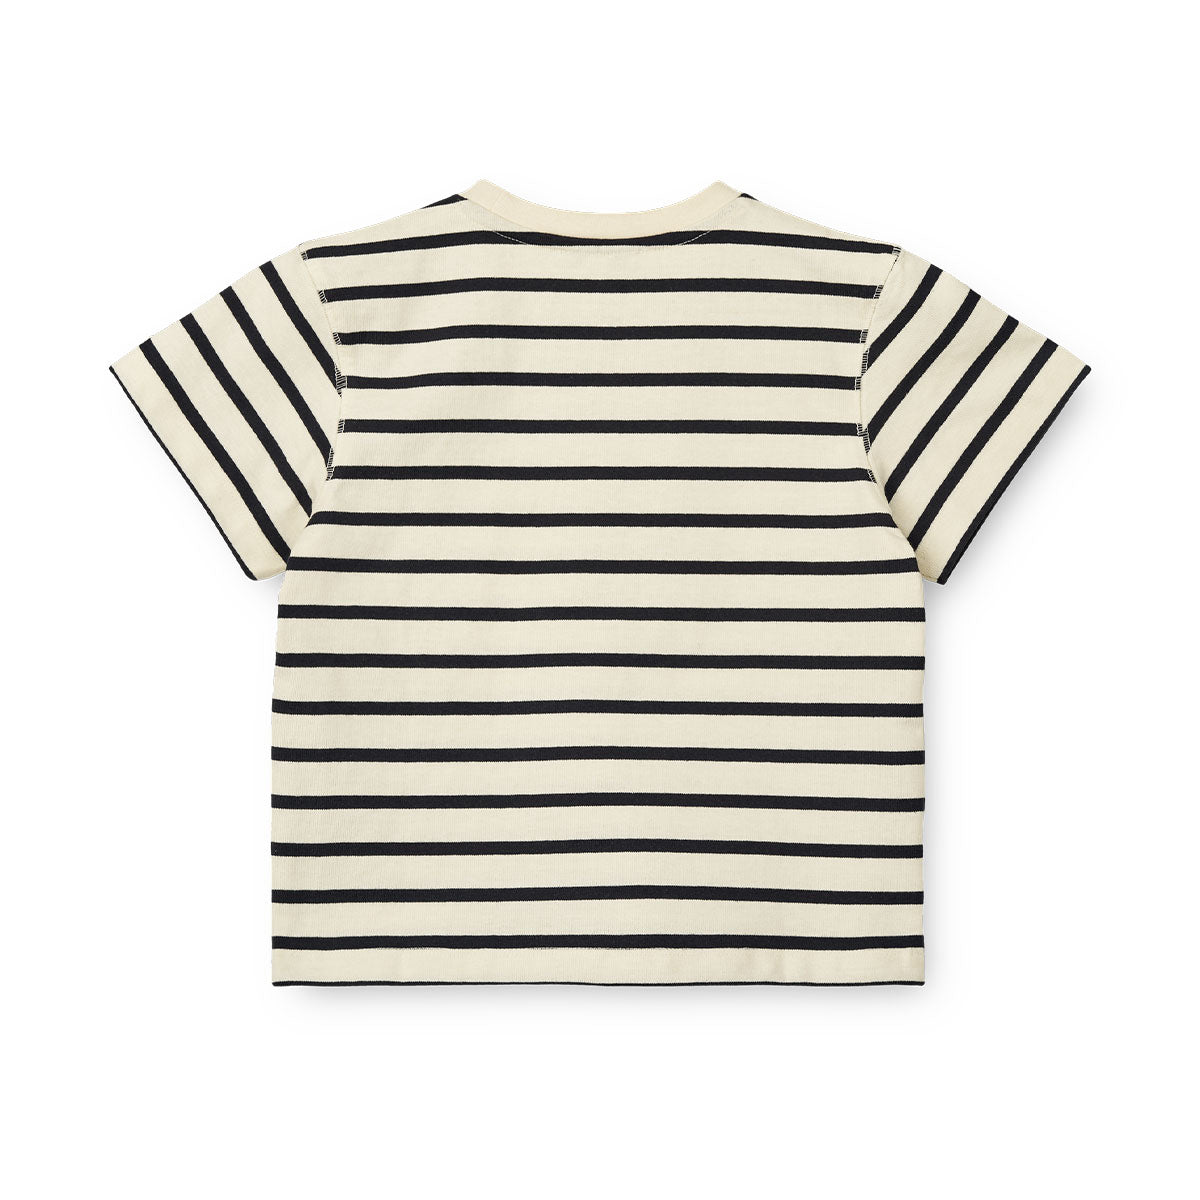 Verrijk de garderobe van je kleintje met dit schattige sixten T-shirt in de kleur stripe classic navy/creme de la creme van het merk Liewood. Dit stijlvolle shirtje ziet er niet alleen geweldig uit, maar zit ook heel erg lekker! VanZus